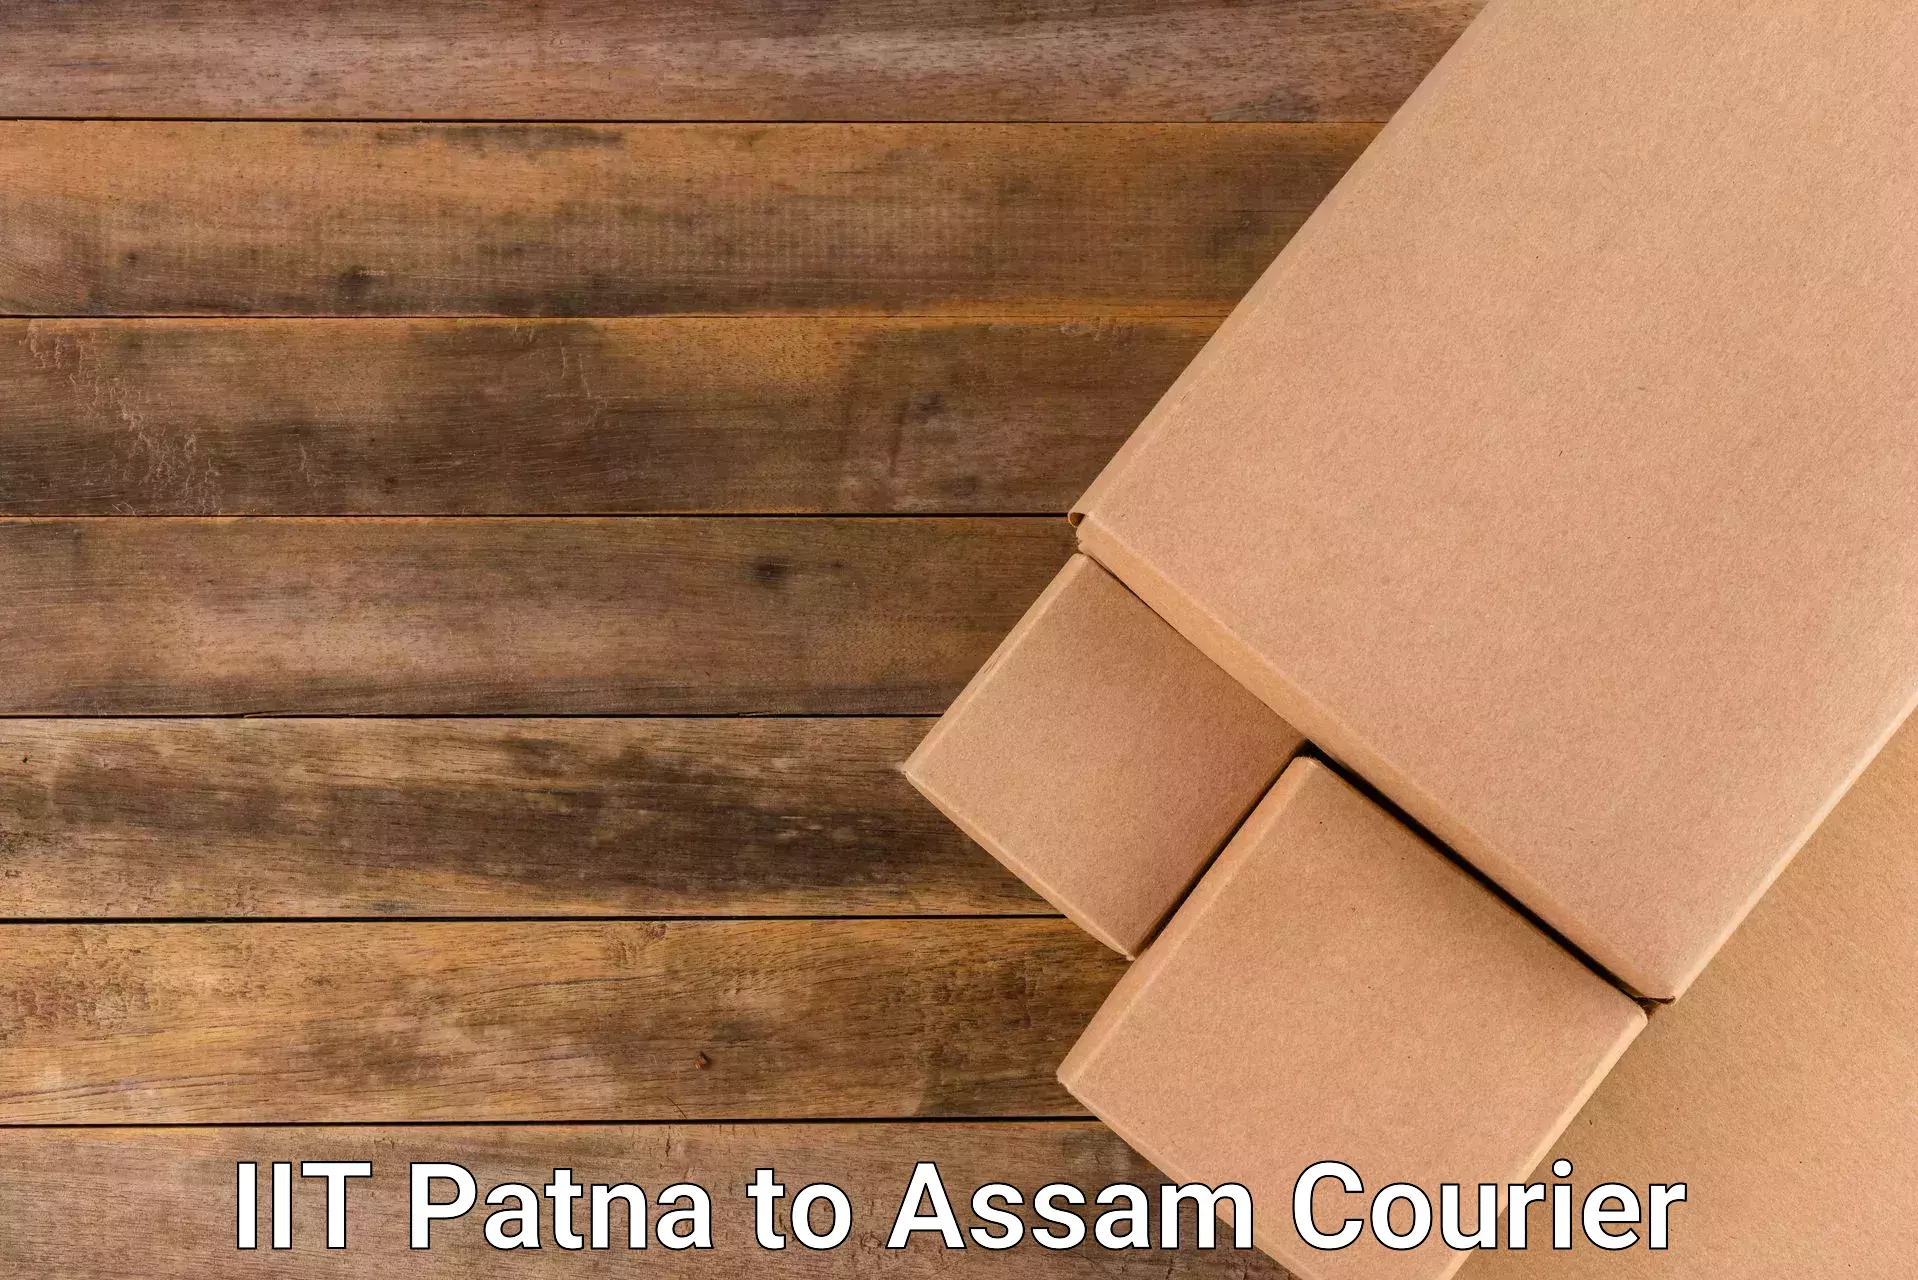 Long distance courier IIT Patna to Assam